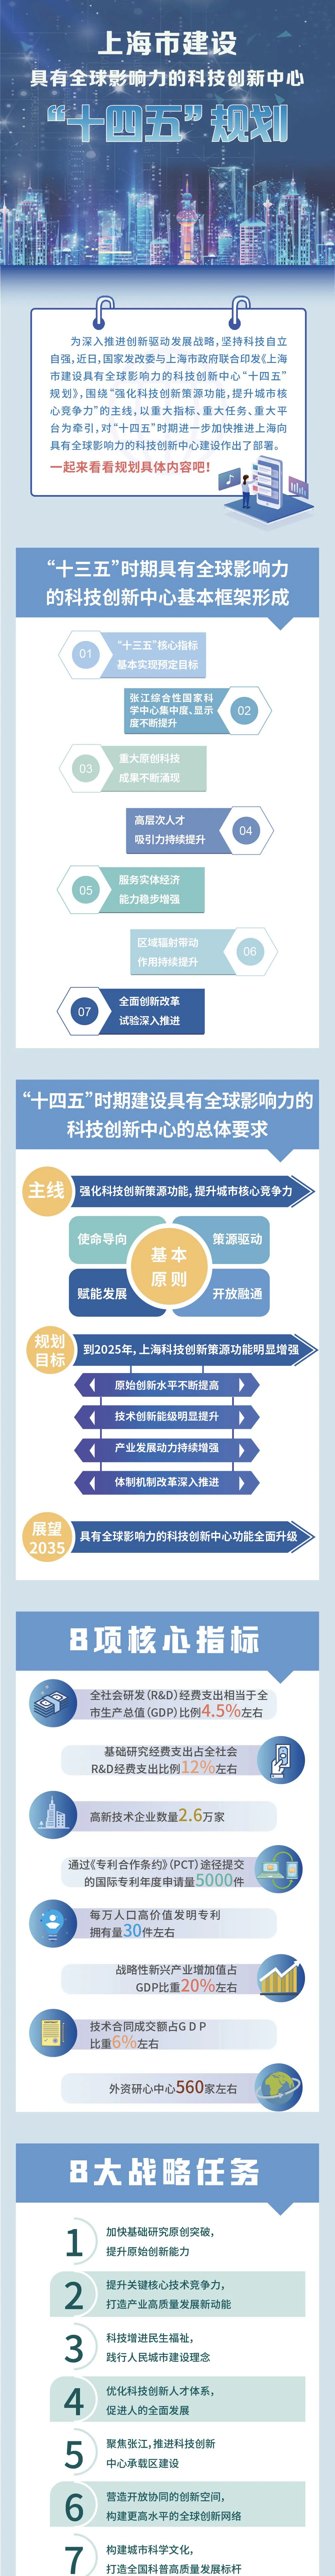 科技创业政策_北京 在校大学生创业 政策_创业无息贷款政策